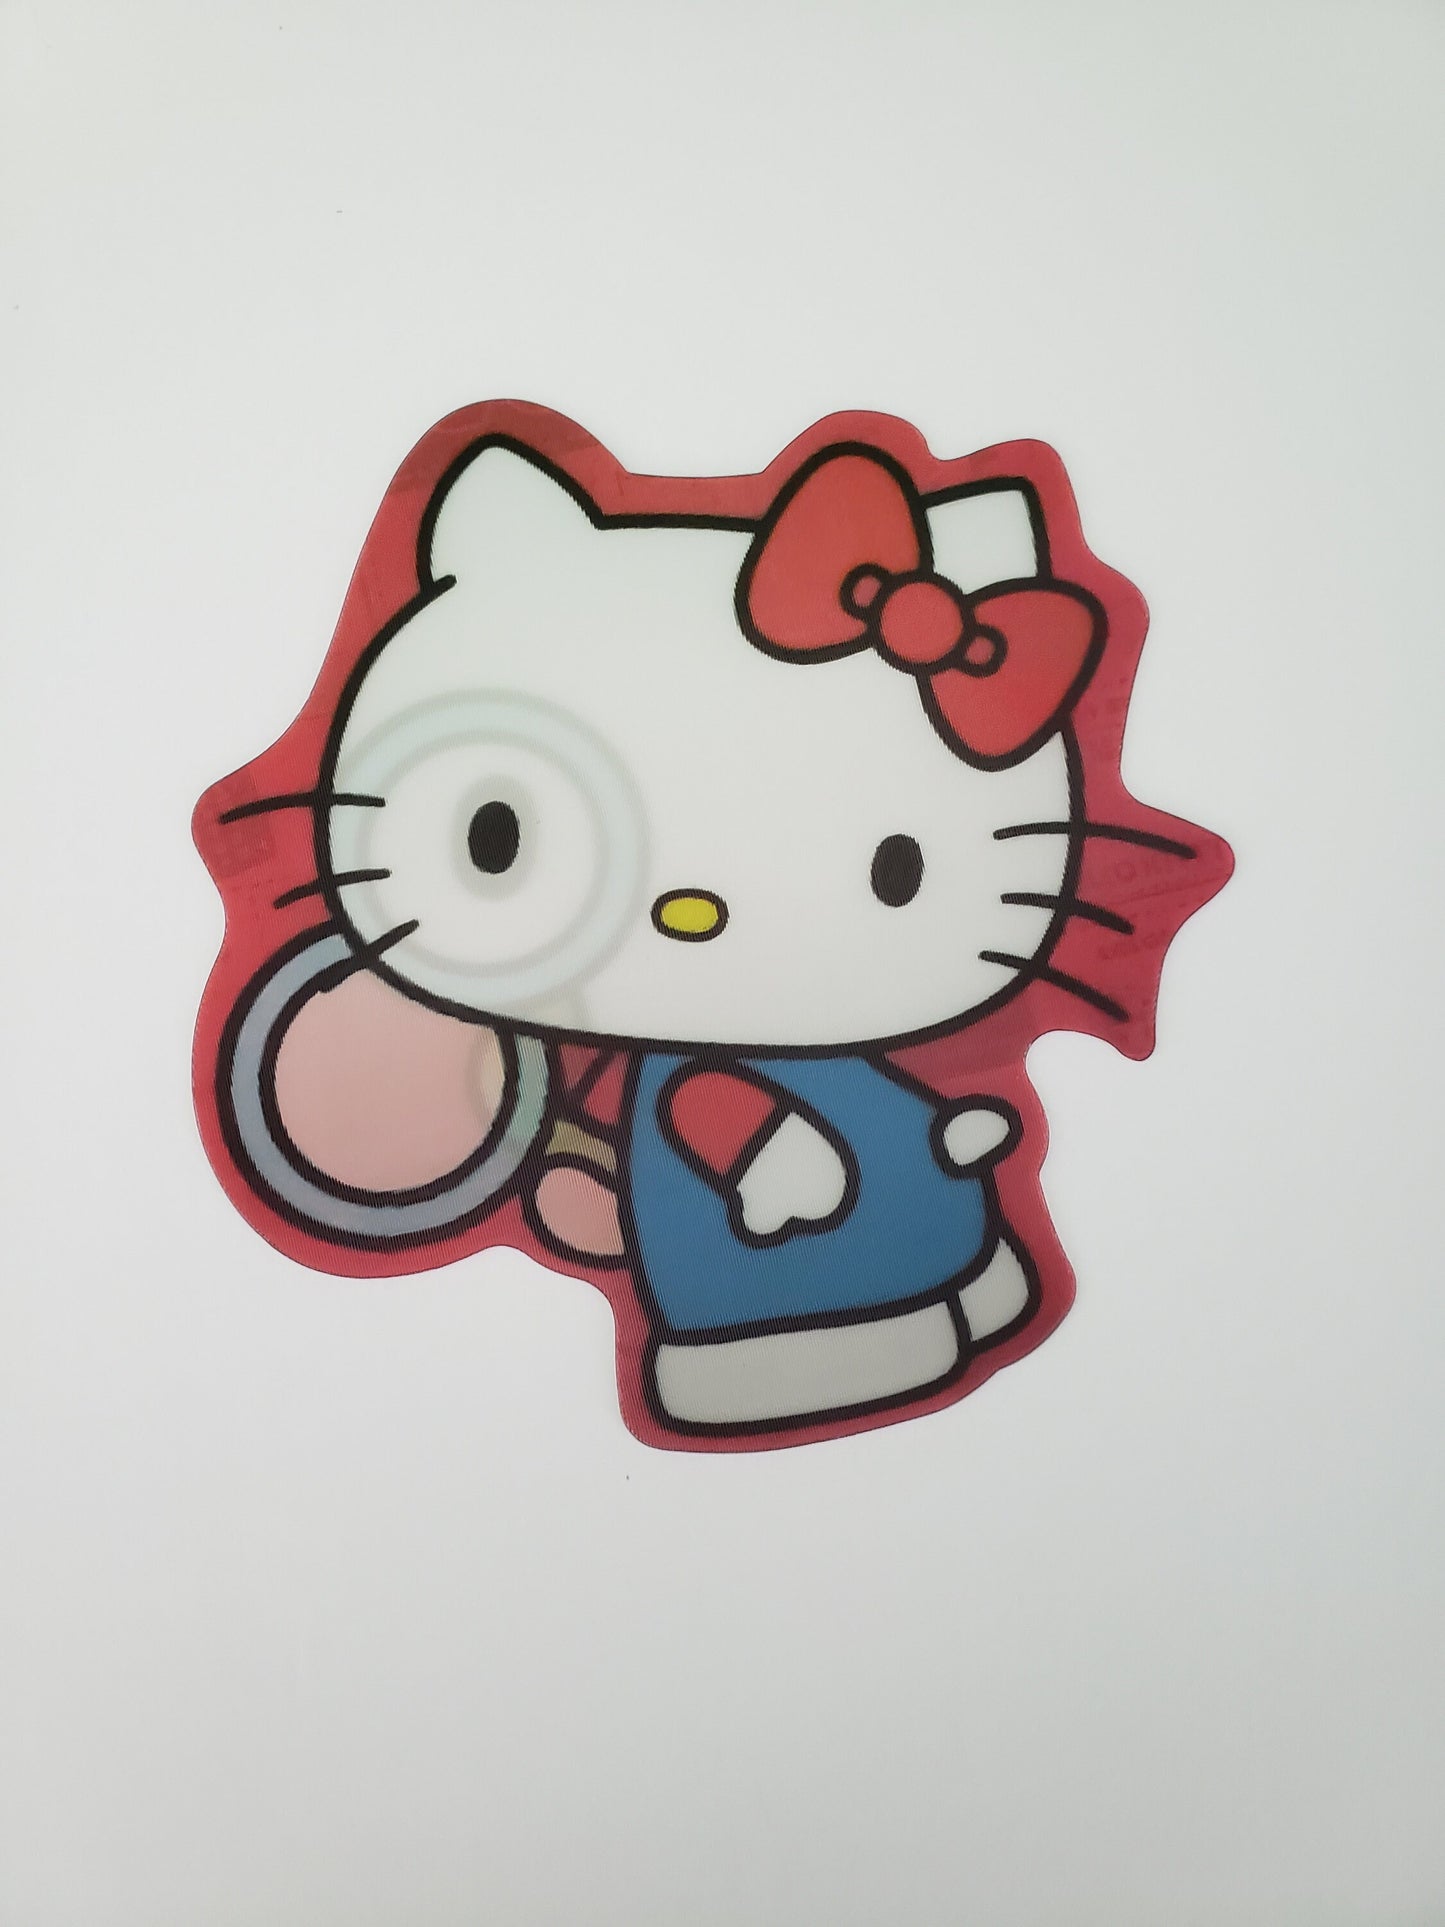 Adorable Cartoon Cat Detective, Peeker Sticker, 3D Lenticular Car Sticker, Motion Sticker, Kawaii Sticker